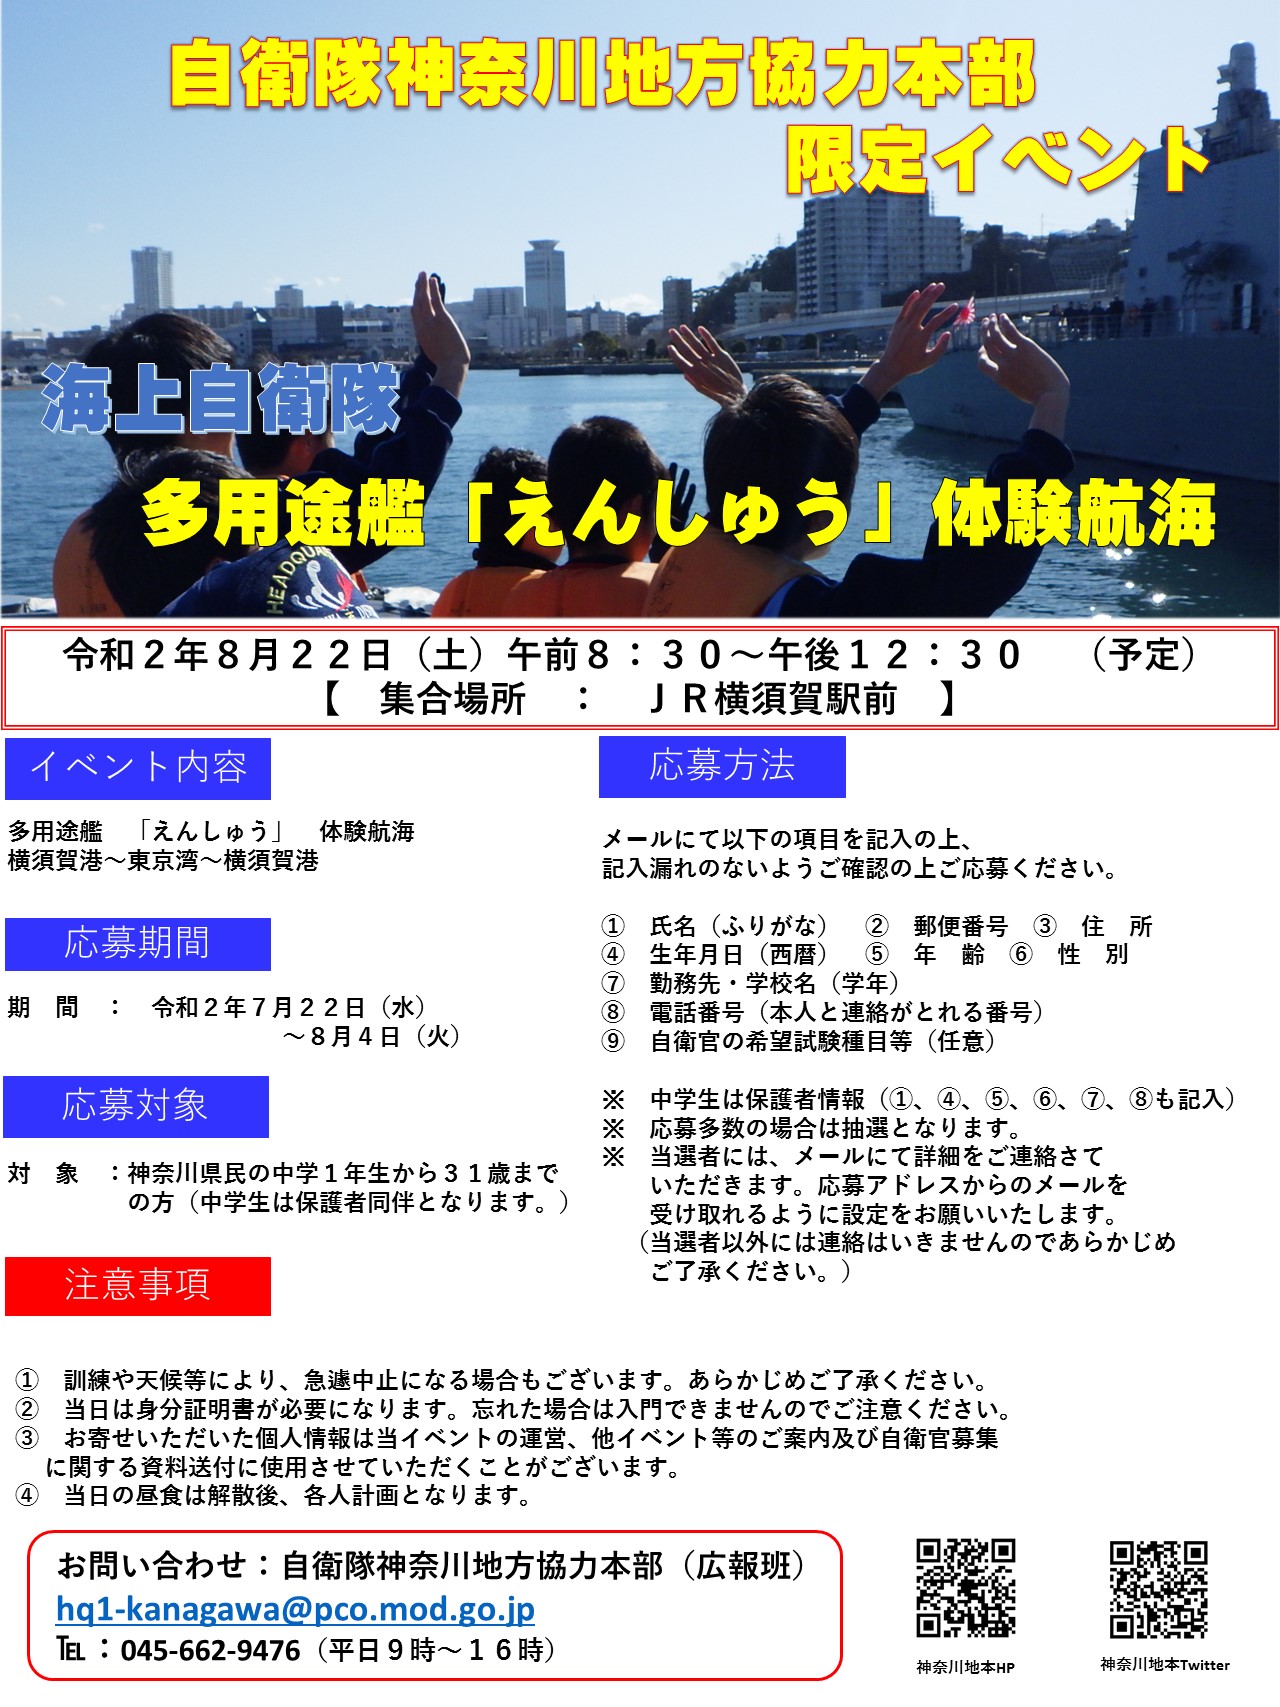 多用途支援艦えんしゅう体験航海 神奈川地方協力本部ポスター